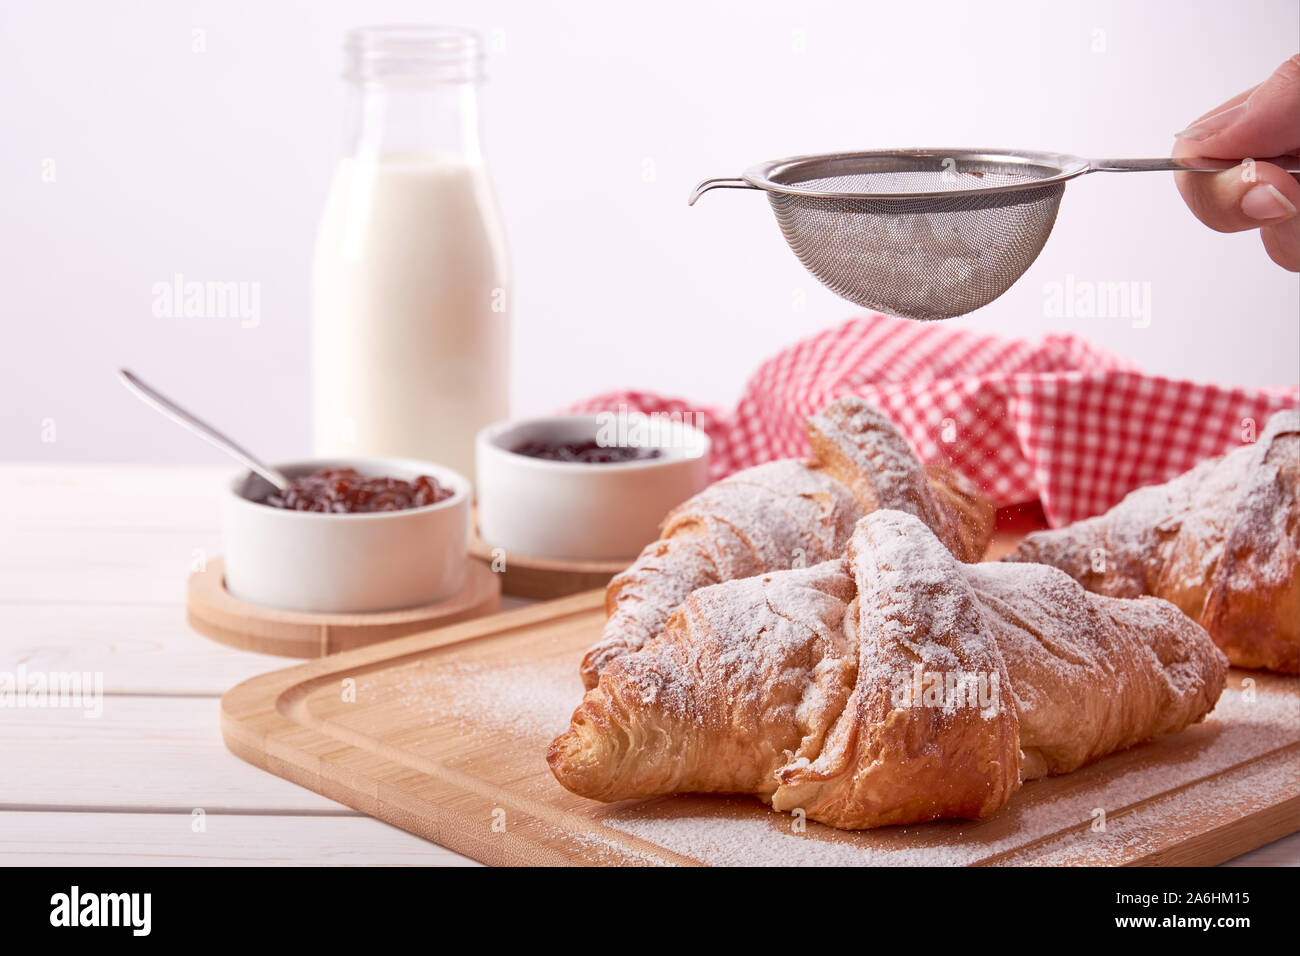 Stillleben mit gezuckertem Croissant, Porzellan Schüsseln mit Marmelade und ein Glas Milch und weibliche Hand mit Zucker, auf weißem Holz- Tisch mit Platz f Stockfoto